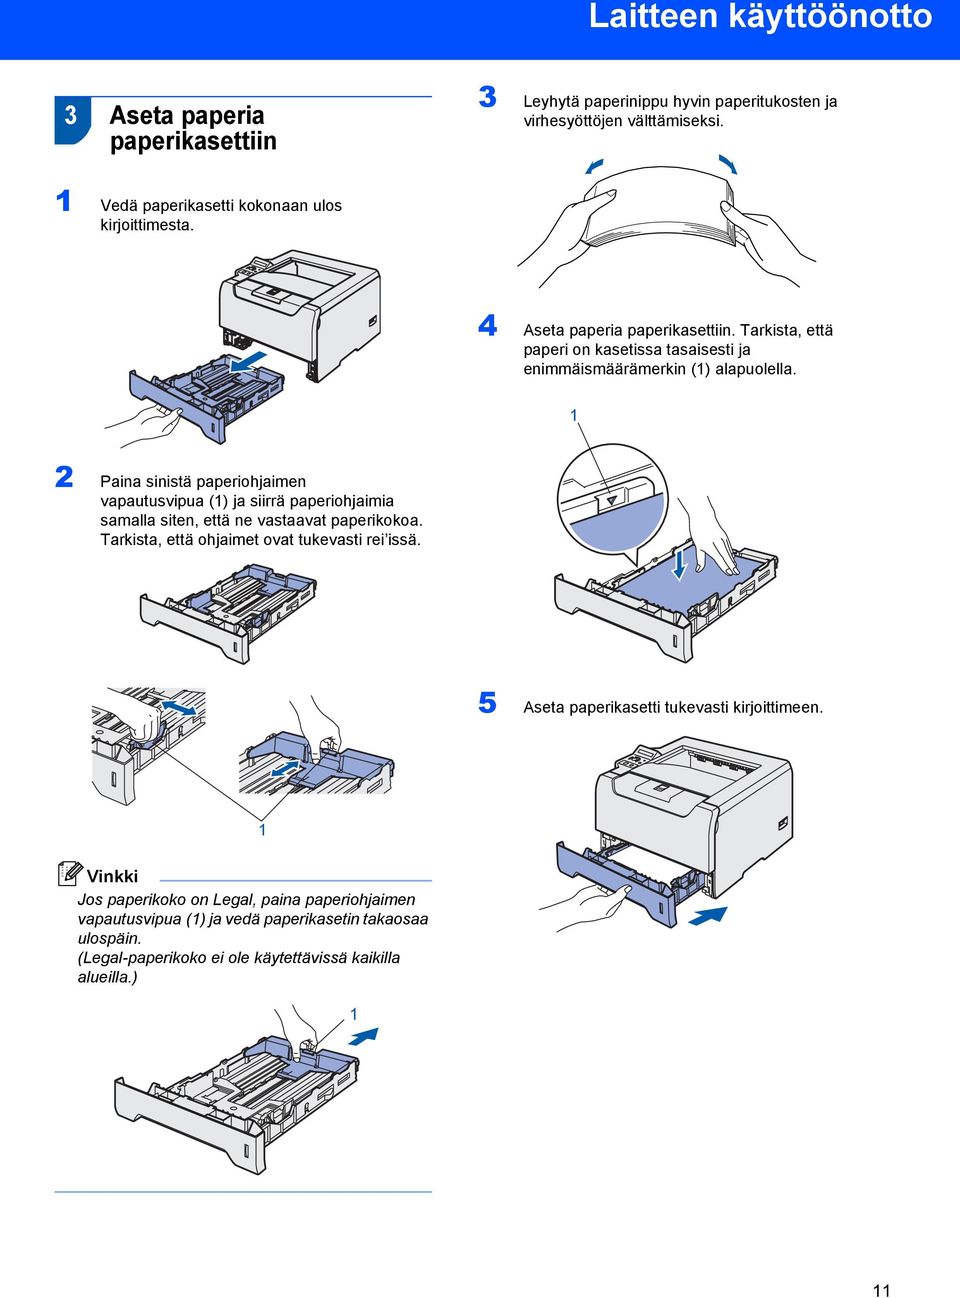 1 2 Paina sinistä paperiohjaimen vapautusvipua (1) ja siirrä paperiohjaimia samalla siten, että ne vastaavat paperikokoa. Tarkista, että ohjaimet ovat tukevasti rei issä.